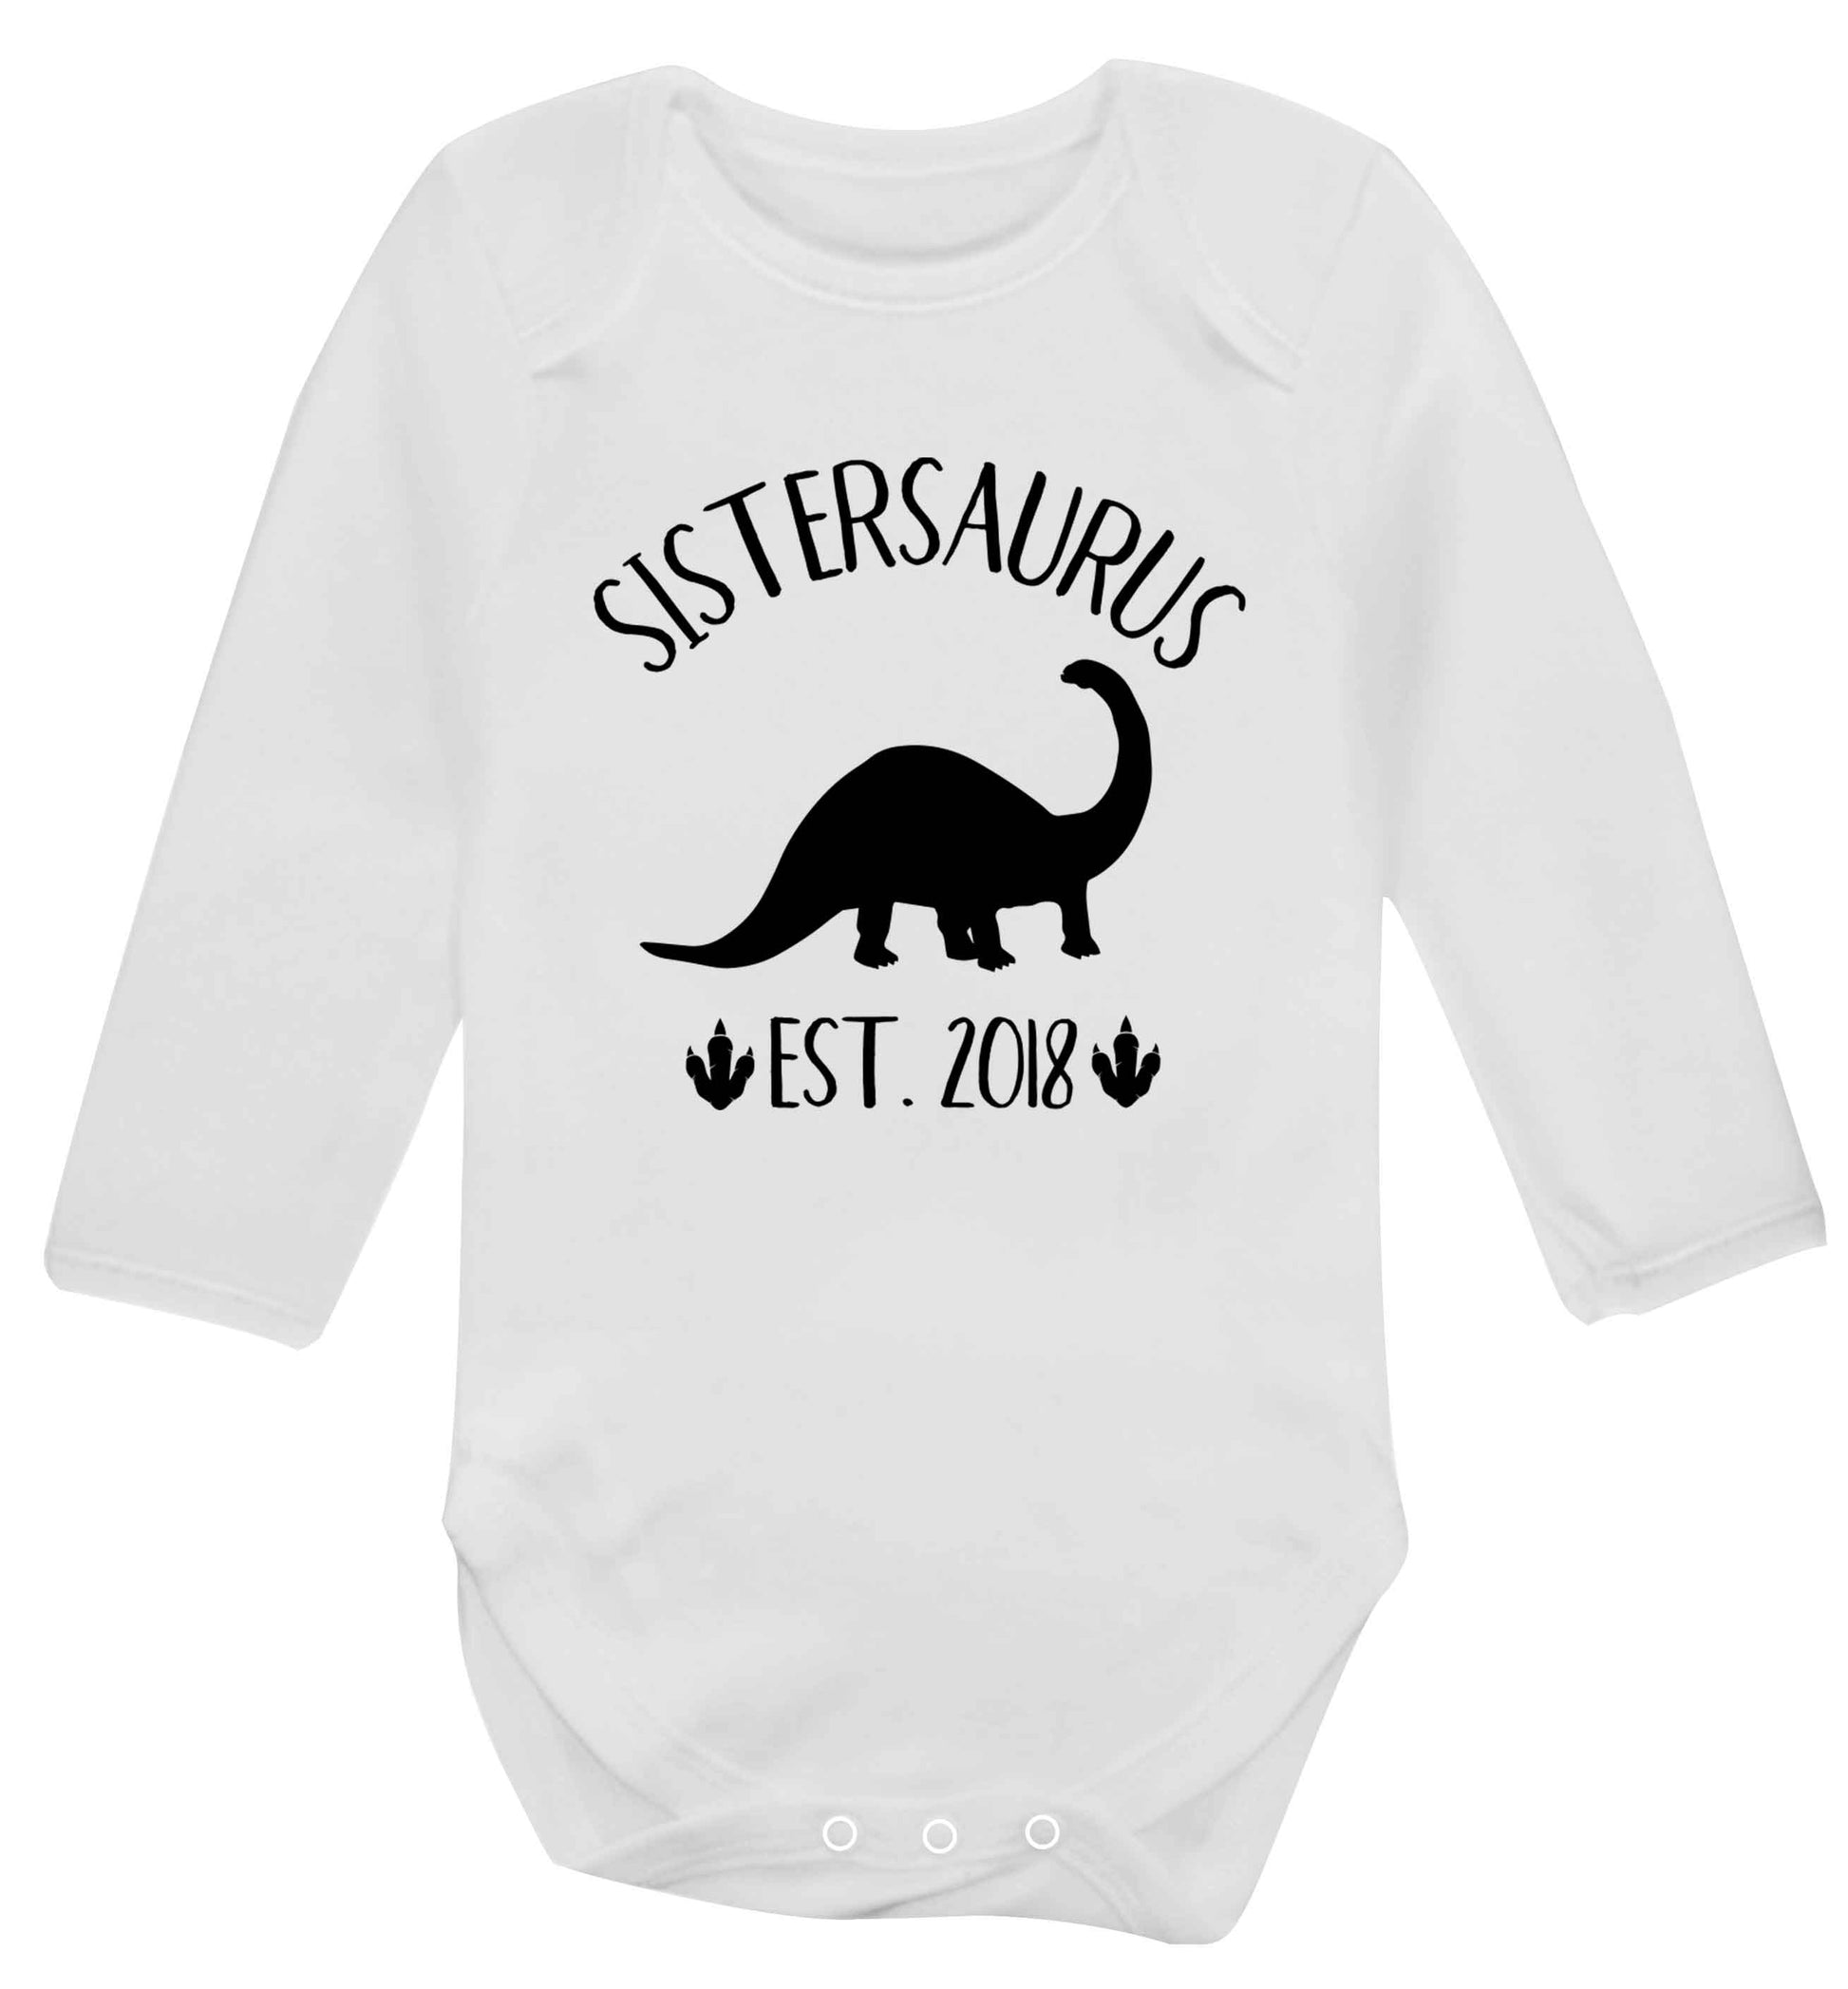 Personalised sistersaurus since (custom date) Baby Vest long sleeved white 6-12 months